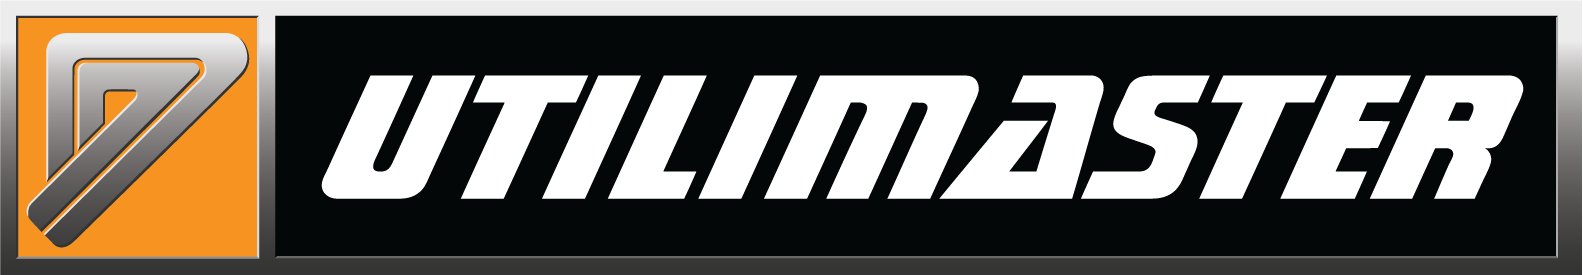 Utilimaster logo image